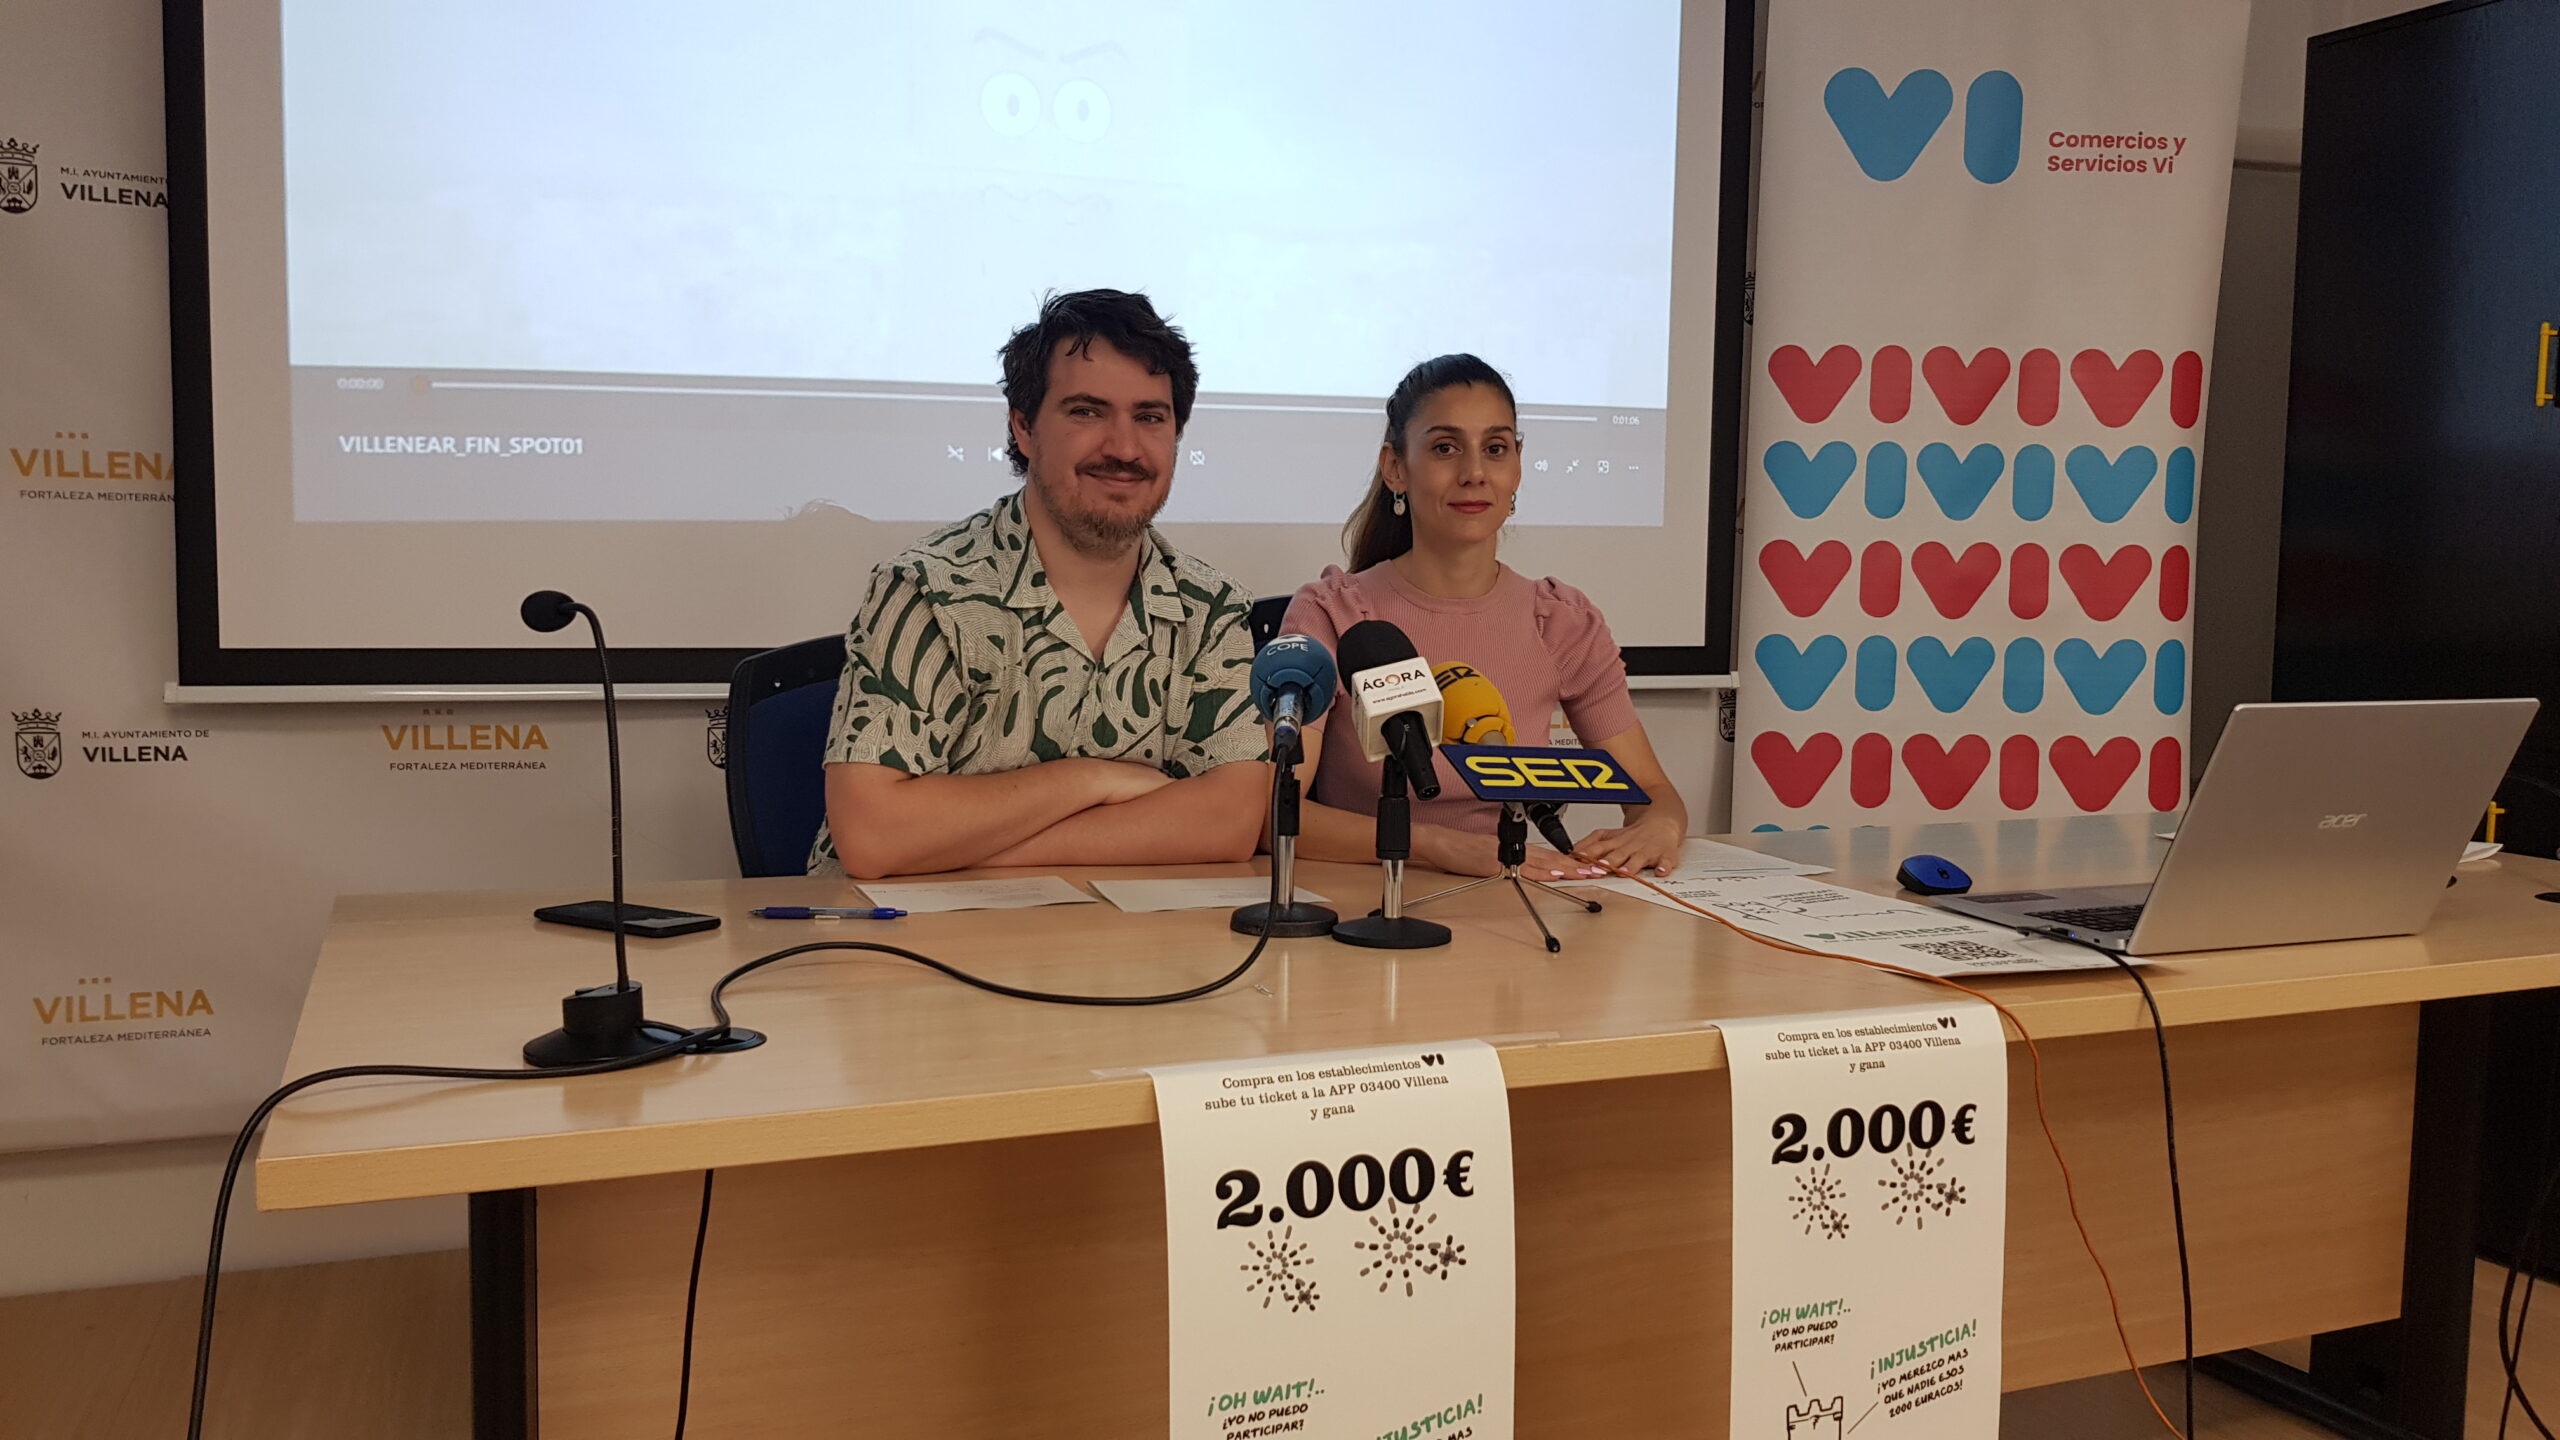  Comercios y Servicios Vi sorteará una paga de 2000 euros entre los clientes de la campaña “Villenear”